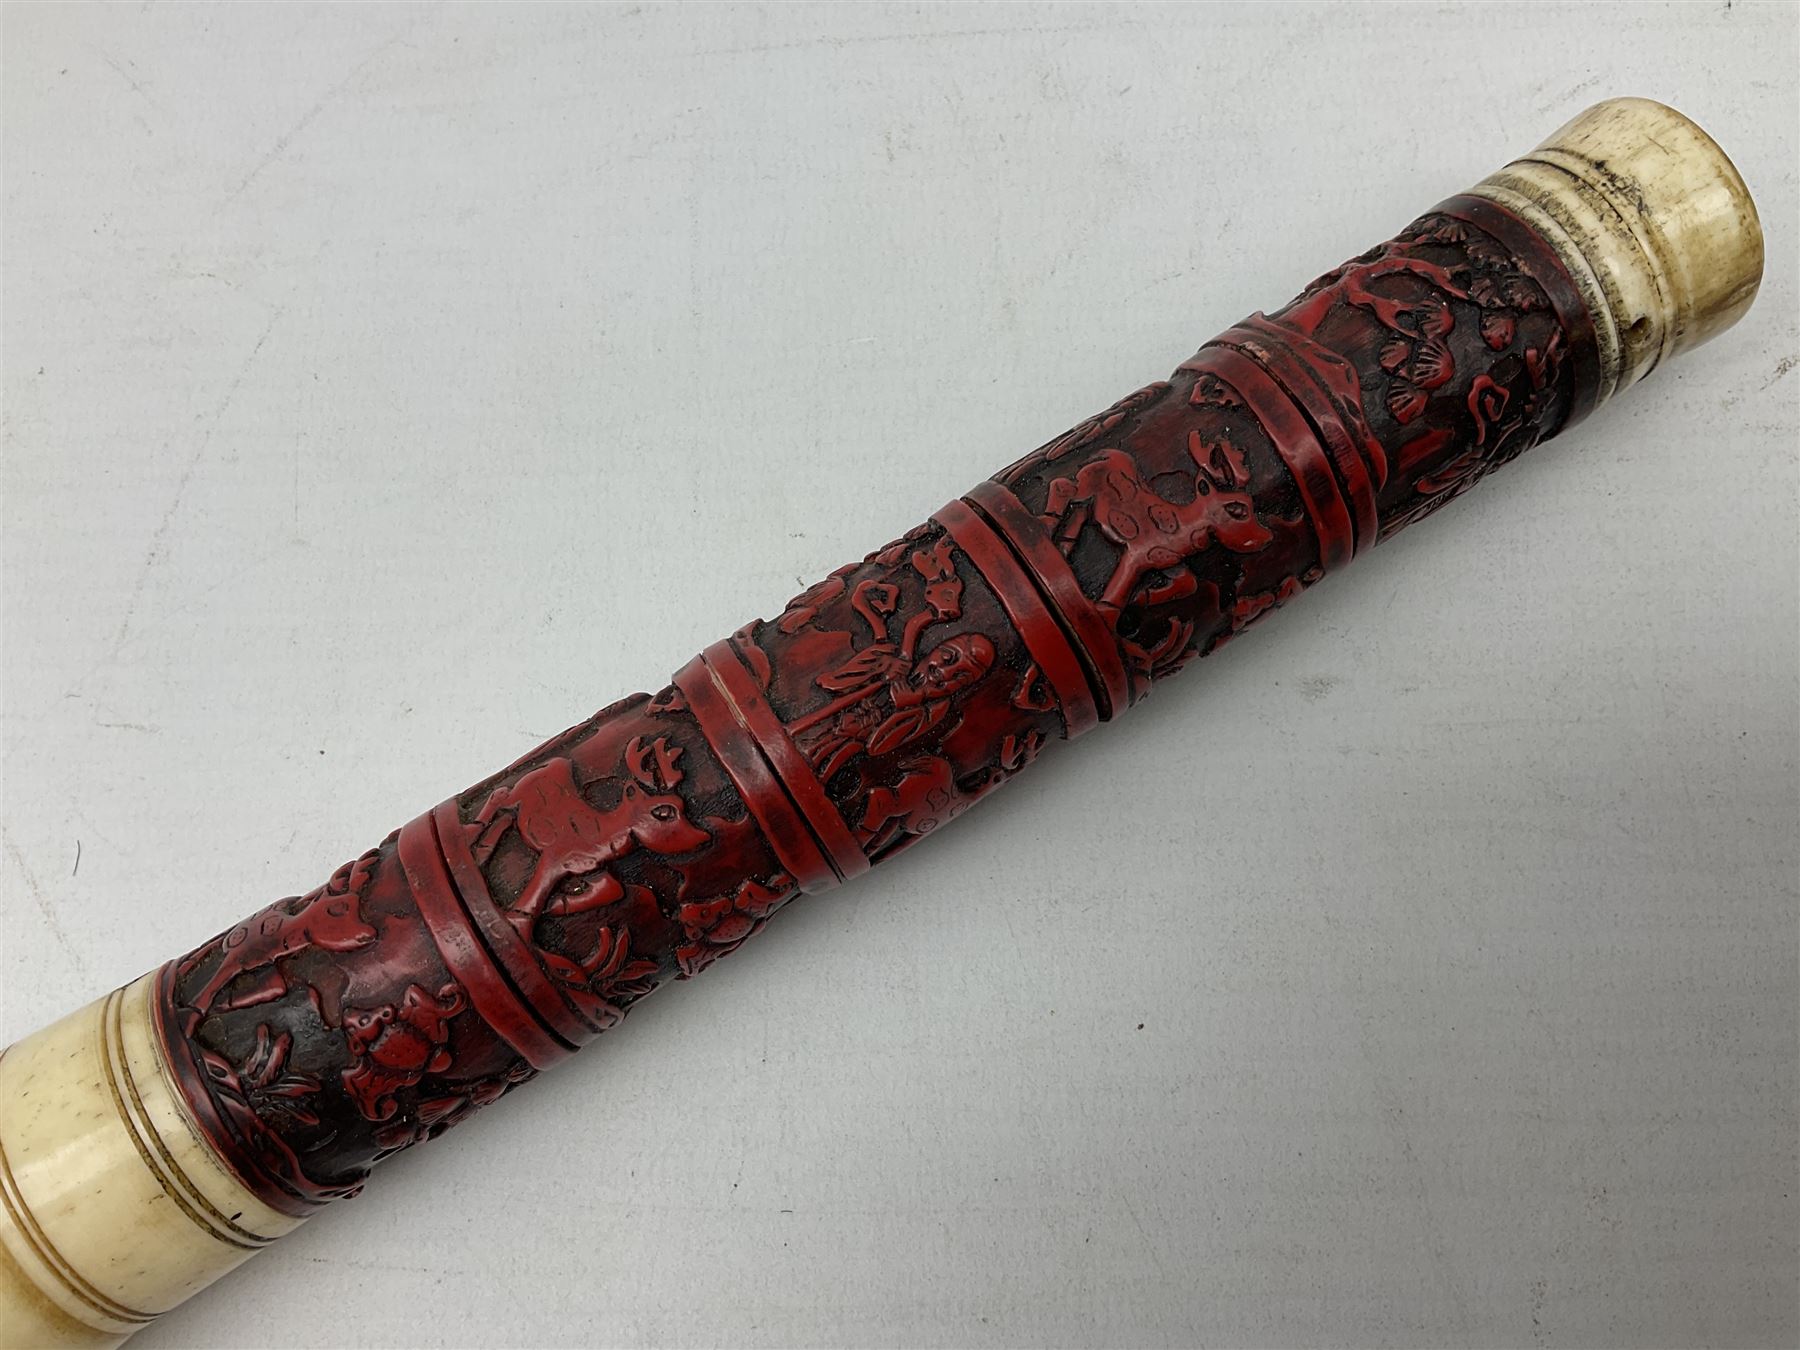 Chinese bone and cinnabar style calligraphy brush - Image 2 of 5